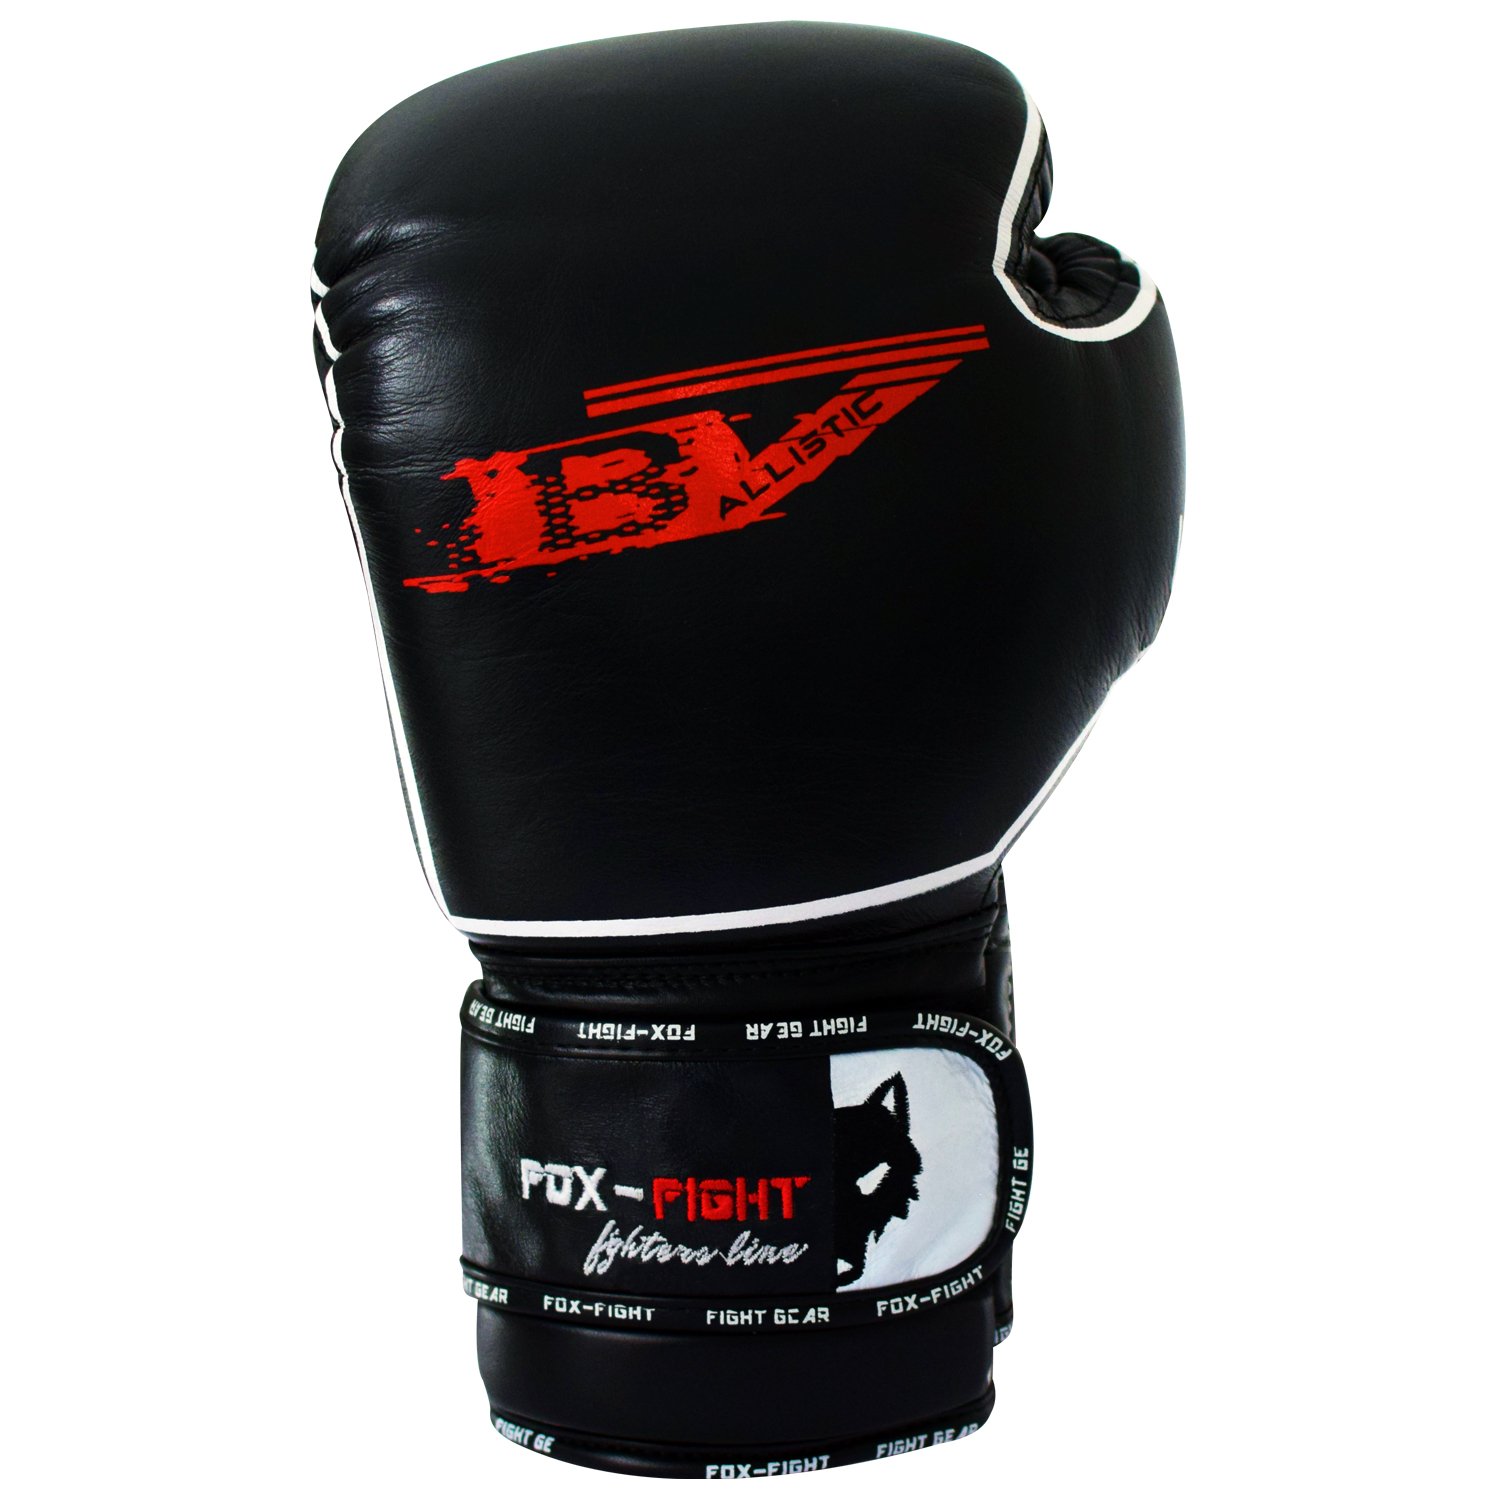 B7 Boxhandschuhe professionelle hochwertige Premium Qualität aus echtem Leder Sandsack Training Sparring Muay Thai Kickbox Freefight Kampfsport BJJ Sandsackhandschuhe Gloves FOX-FIGHT 16 OZ schwarz